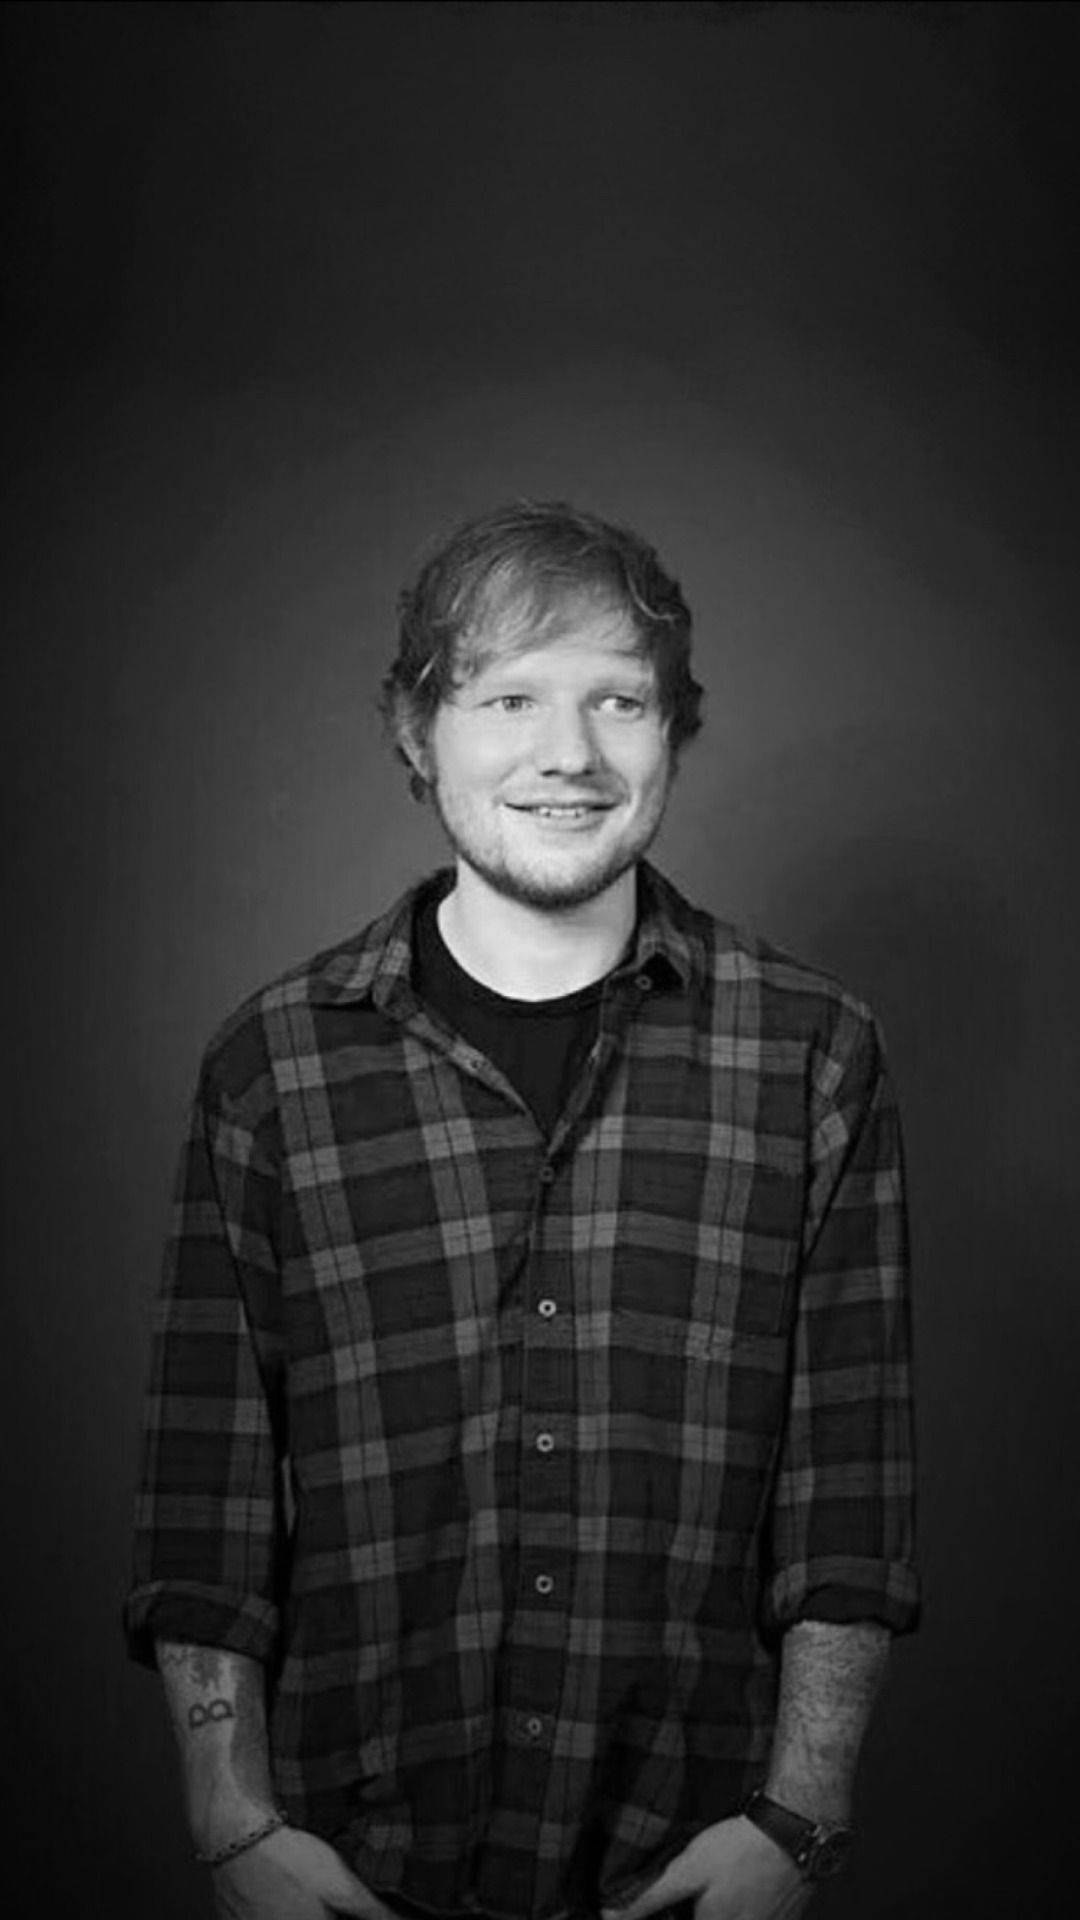 Ed Sheeran - Simple and happy Wallpaper